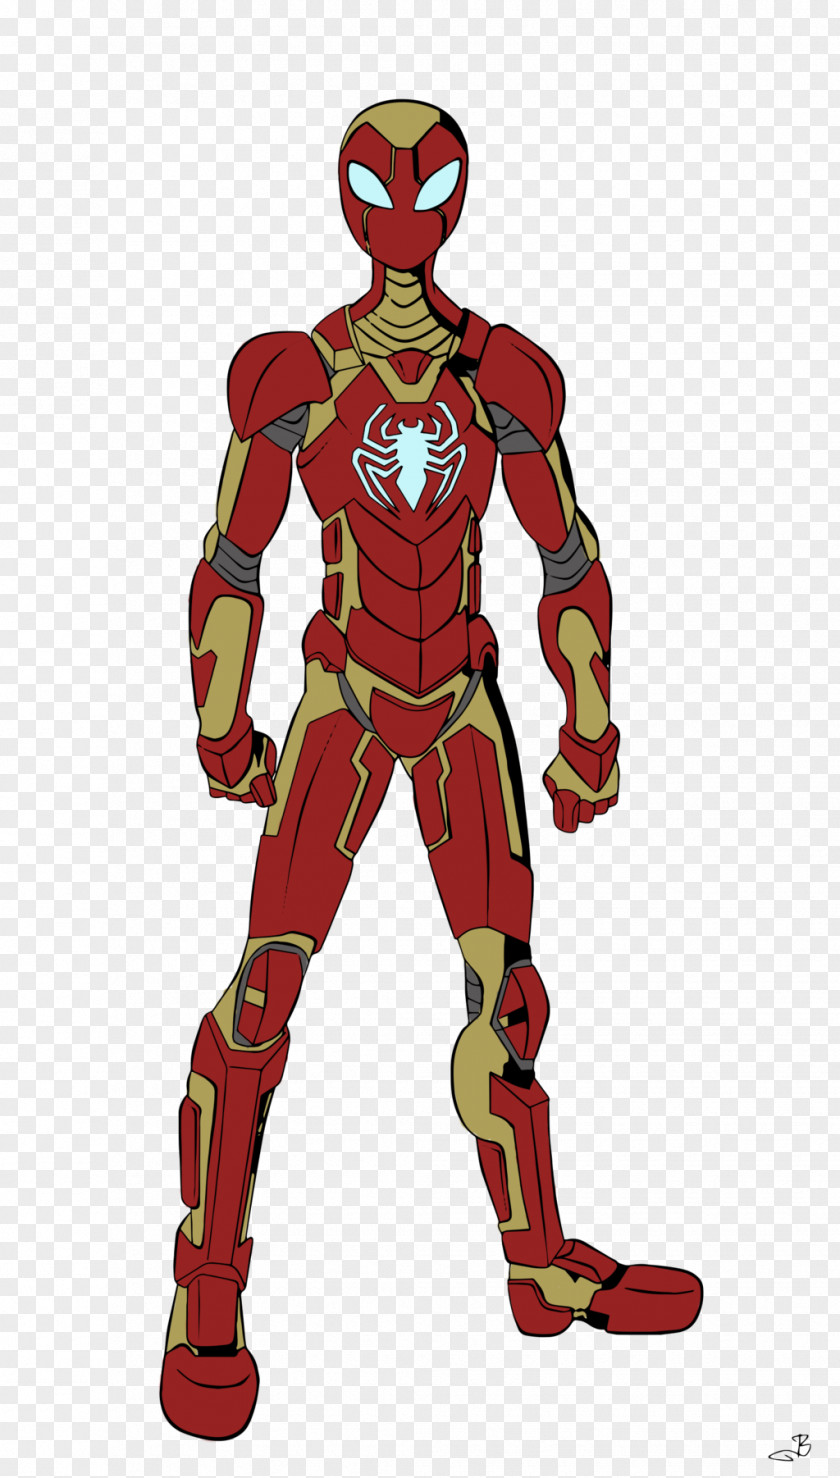 Iron Spiderman Spider-Man 2099 Man Venom Spider PNG